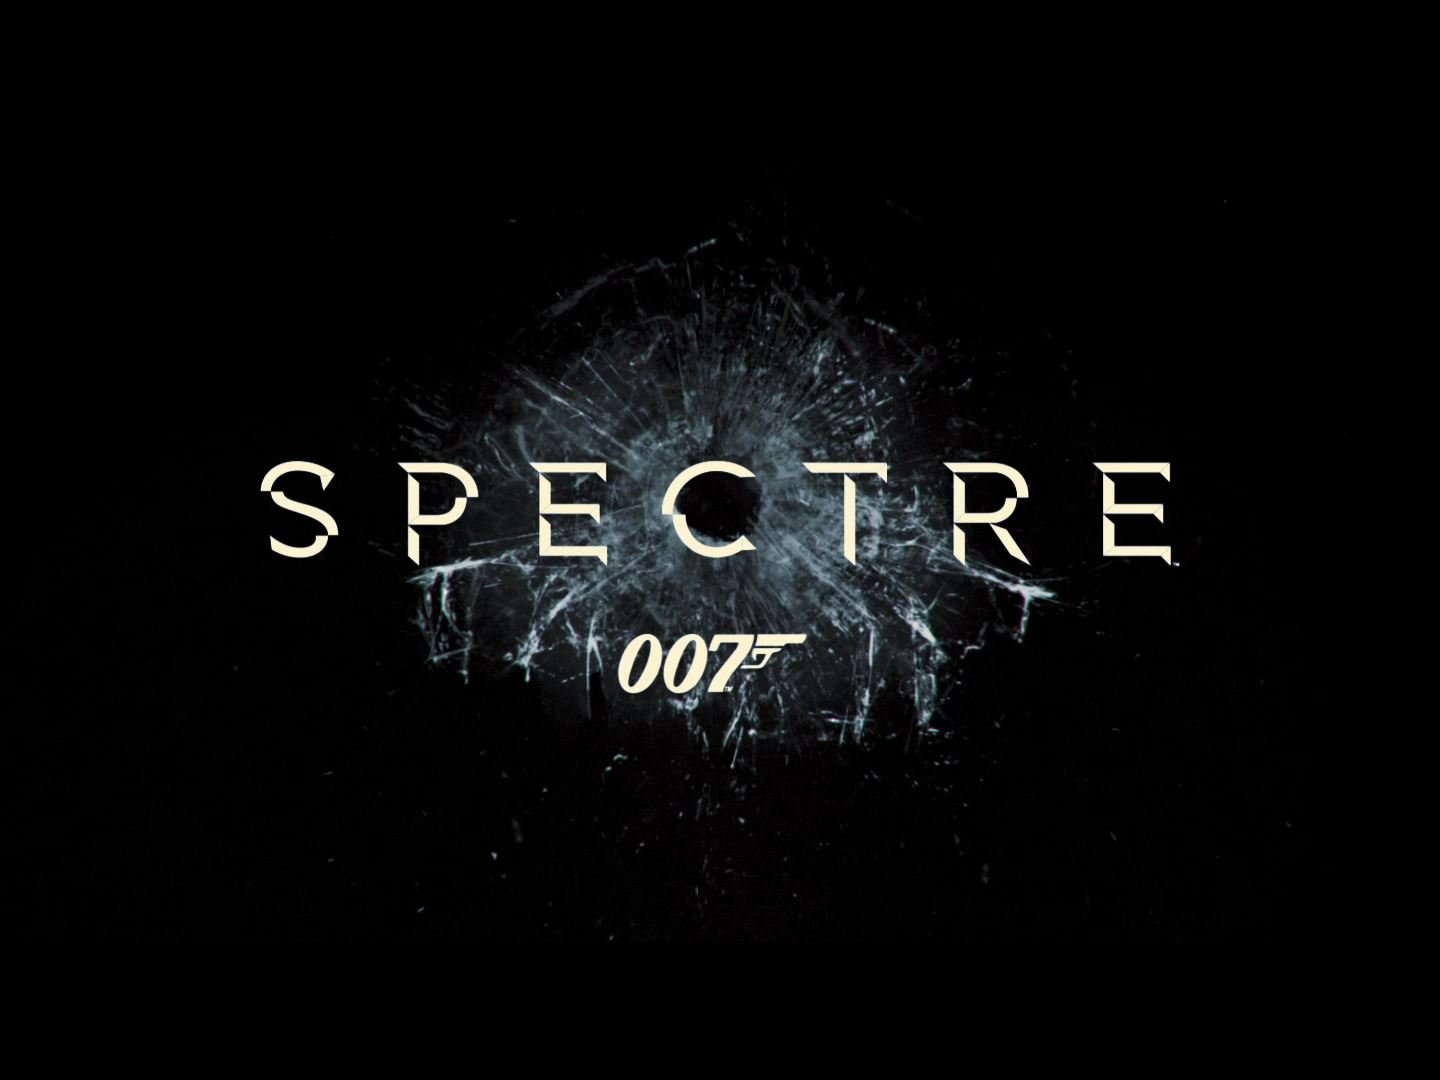 007 spectre